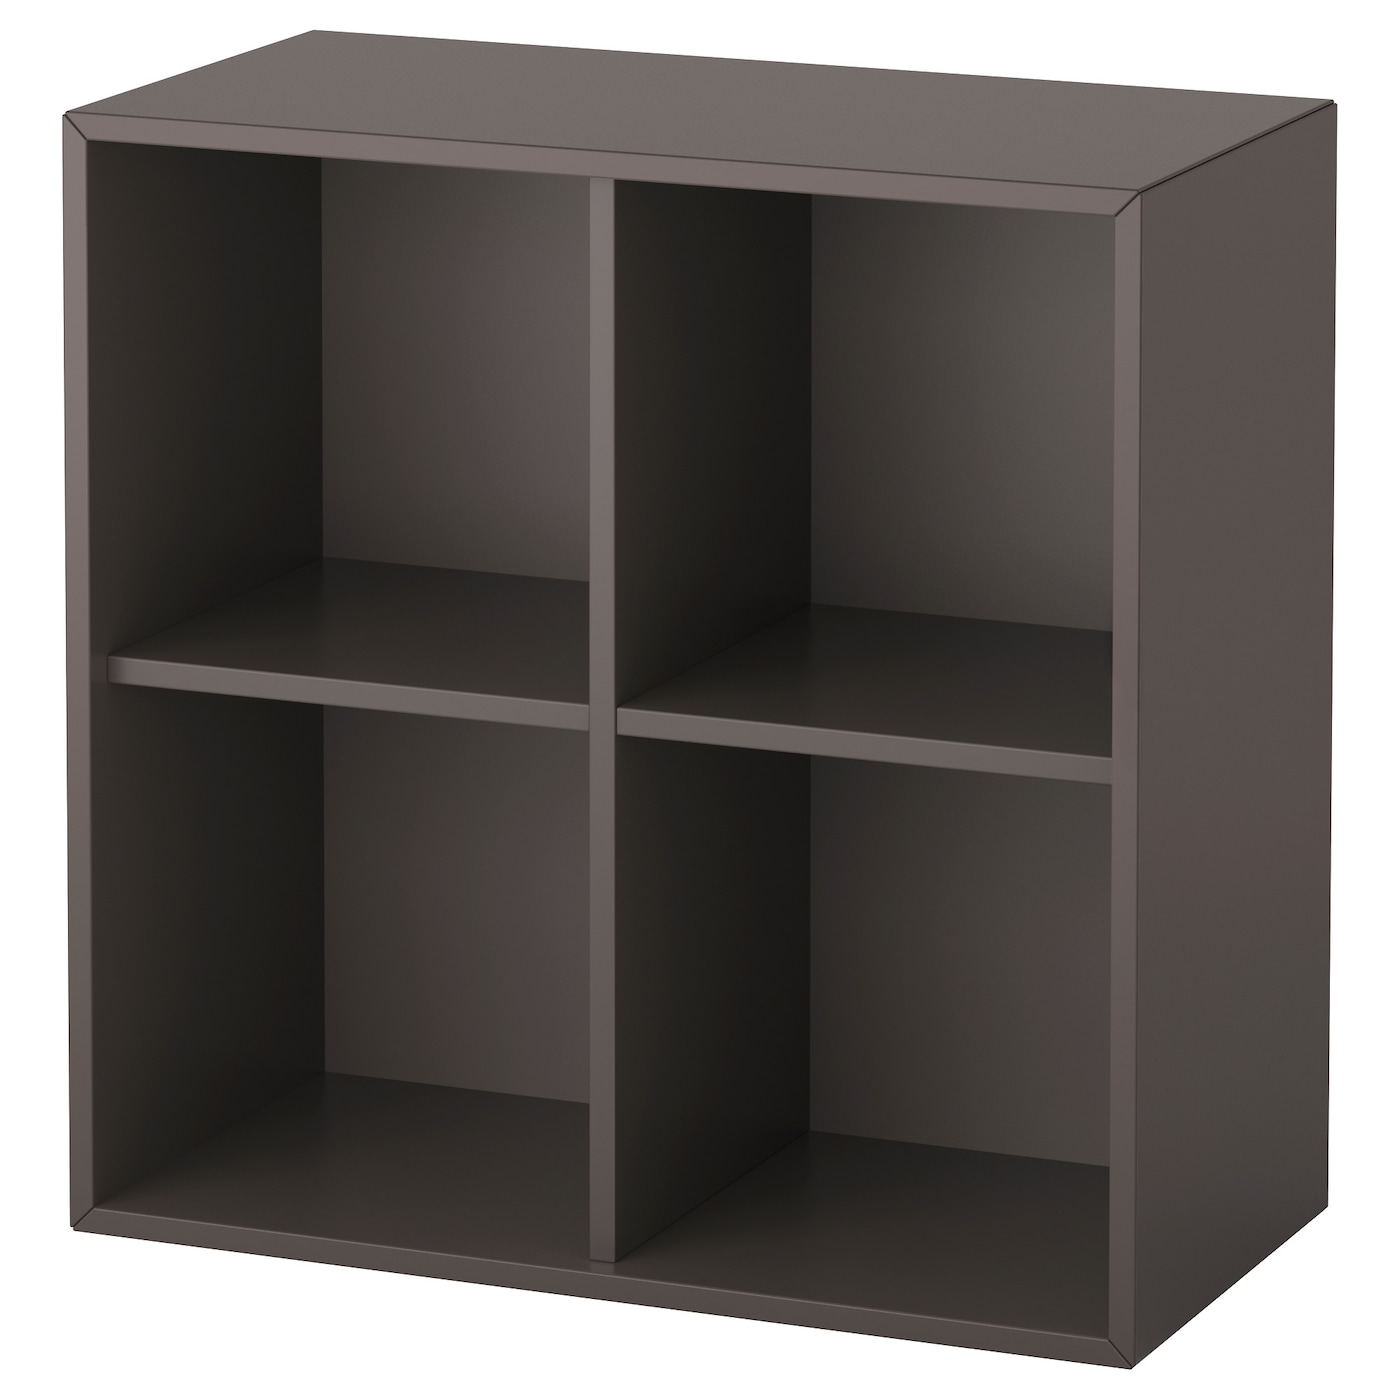 Стеллаж - IKEAEKET, 70x35x70 см, темно-серый, ЭКЕТ ИКЕА